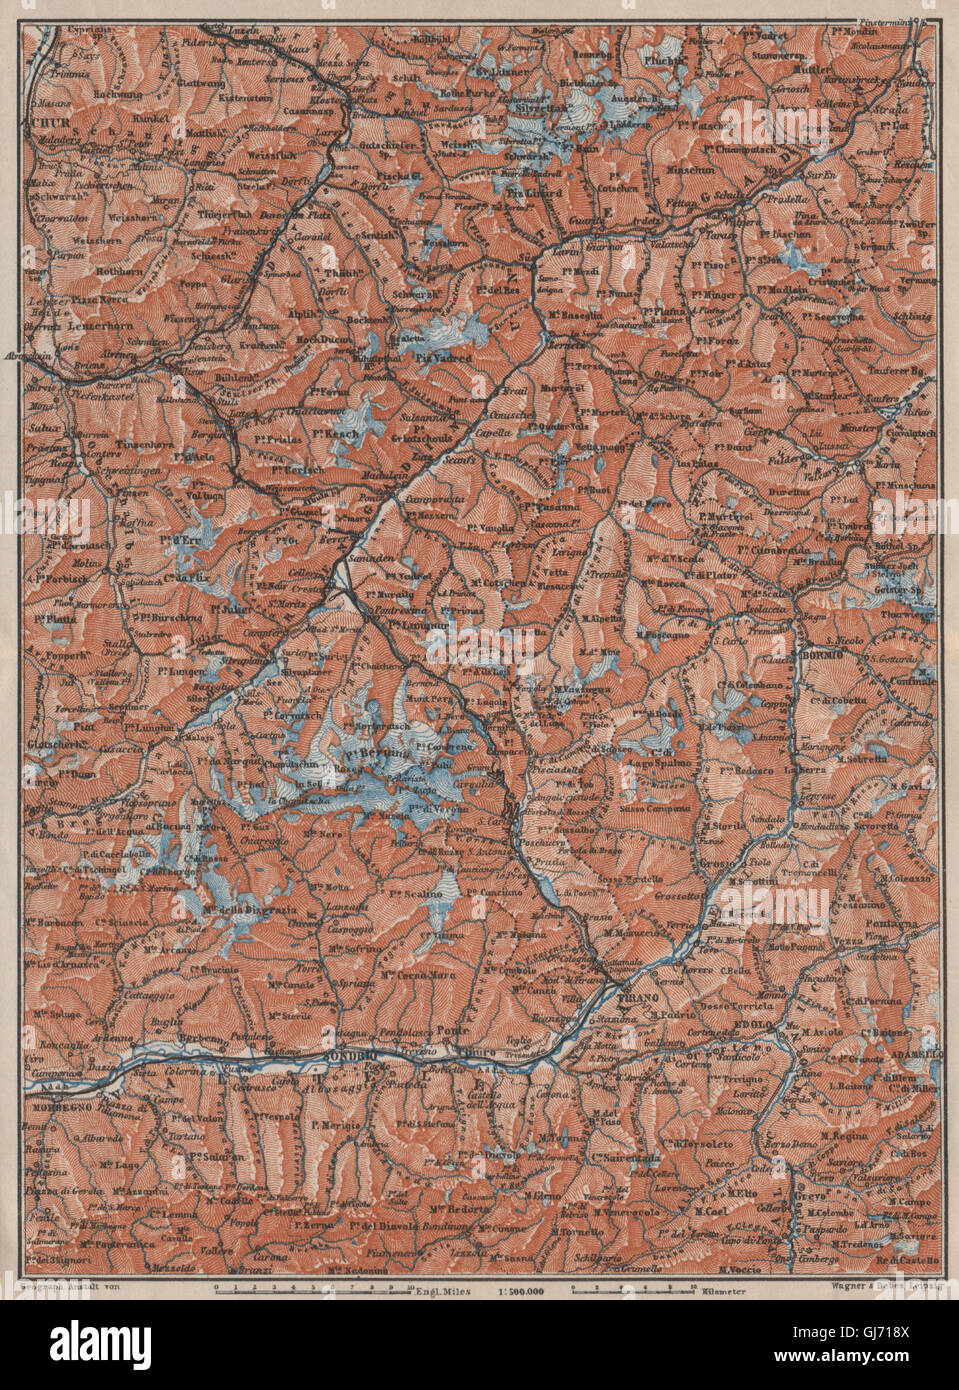 ENGADINE/VAL TELLINA. Davos Arosa Sils Bormio Livigno Sondrio Chur, 1909 map Stock Photo